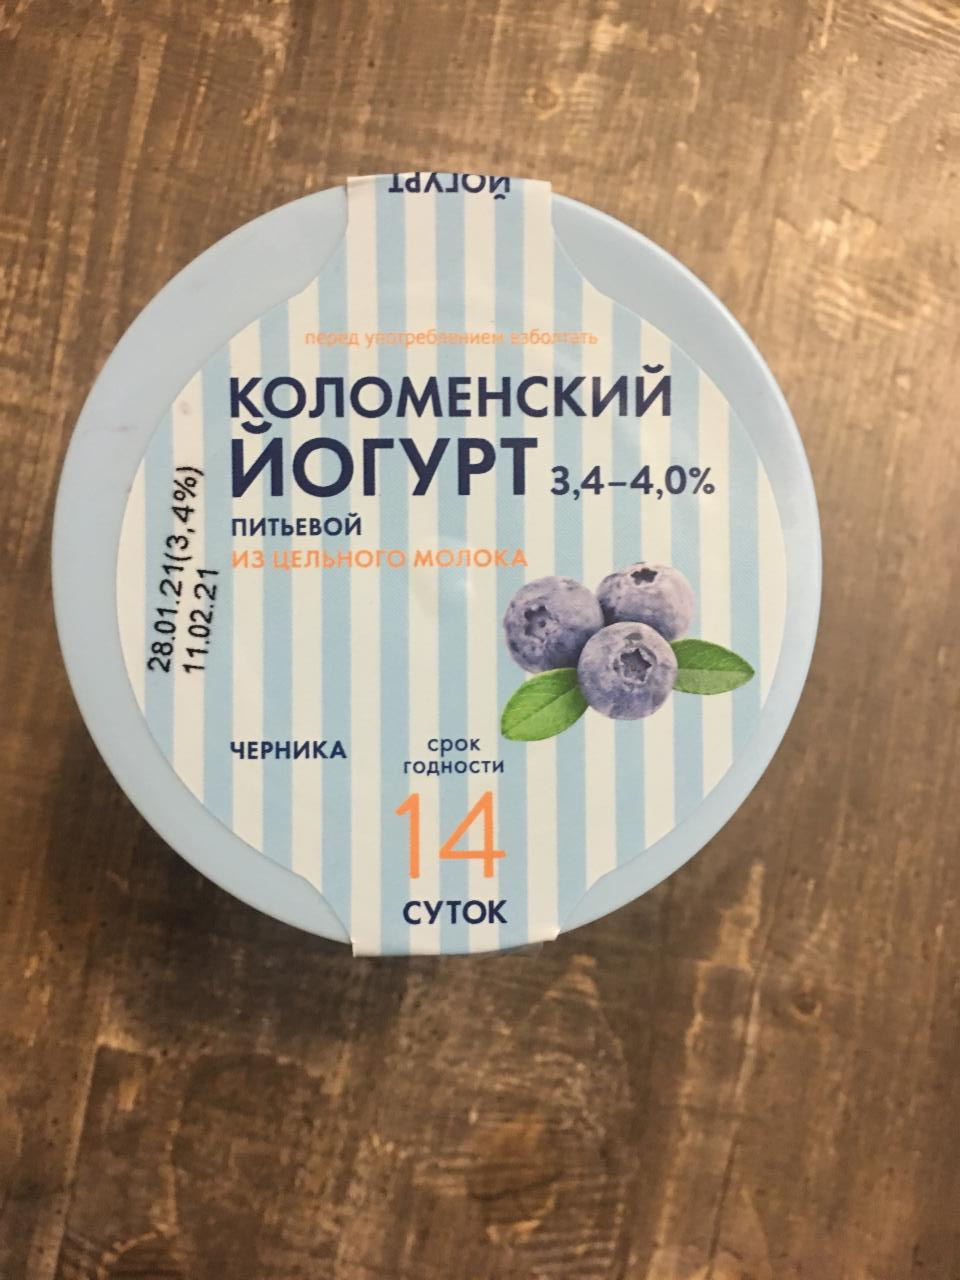 Фото - йогрут питьевой из цельного молока 3.4-4.0% черника Коломенский